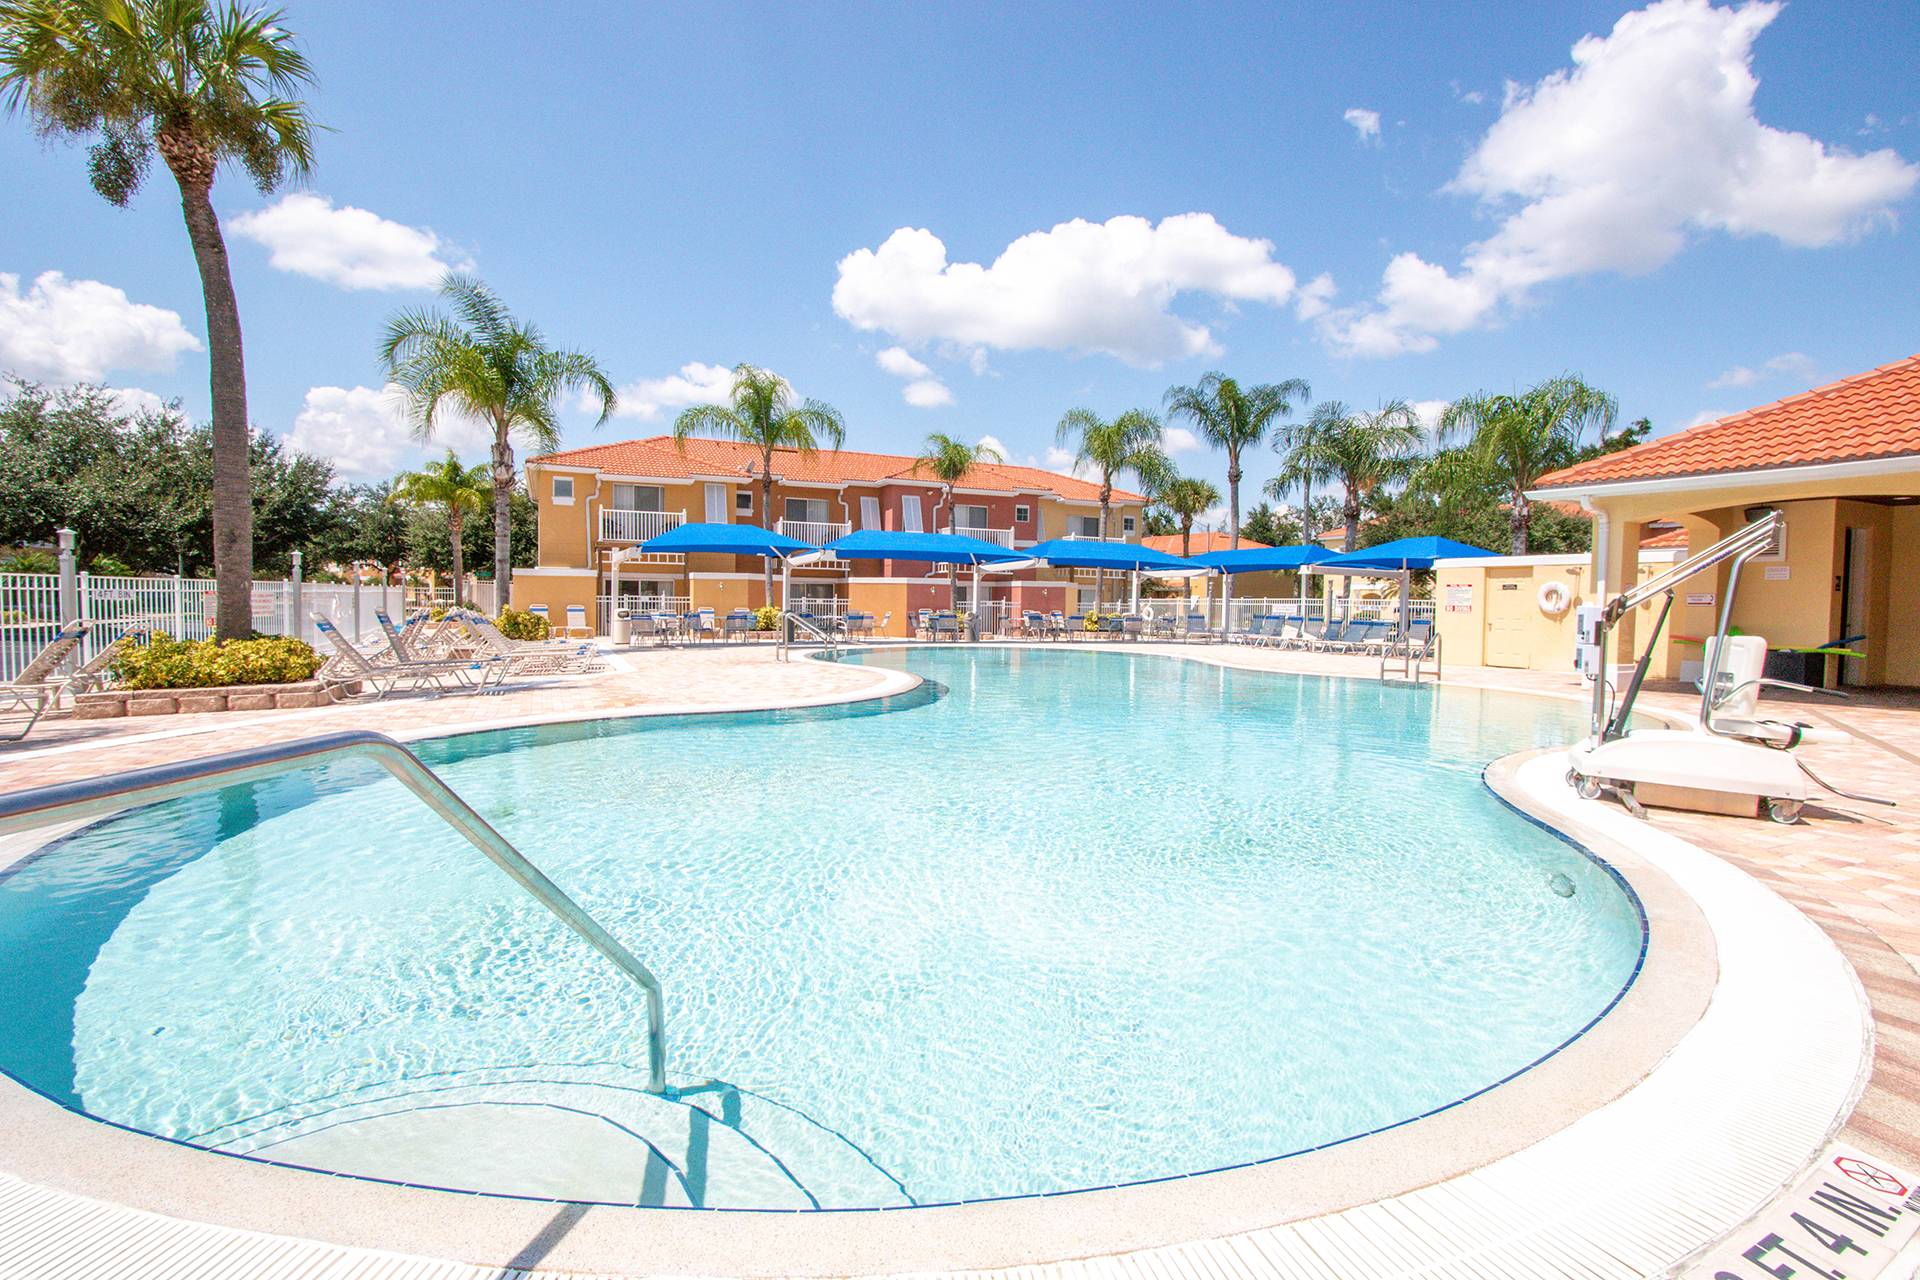 USA-Florida-Orlando-Resort-Pool